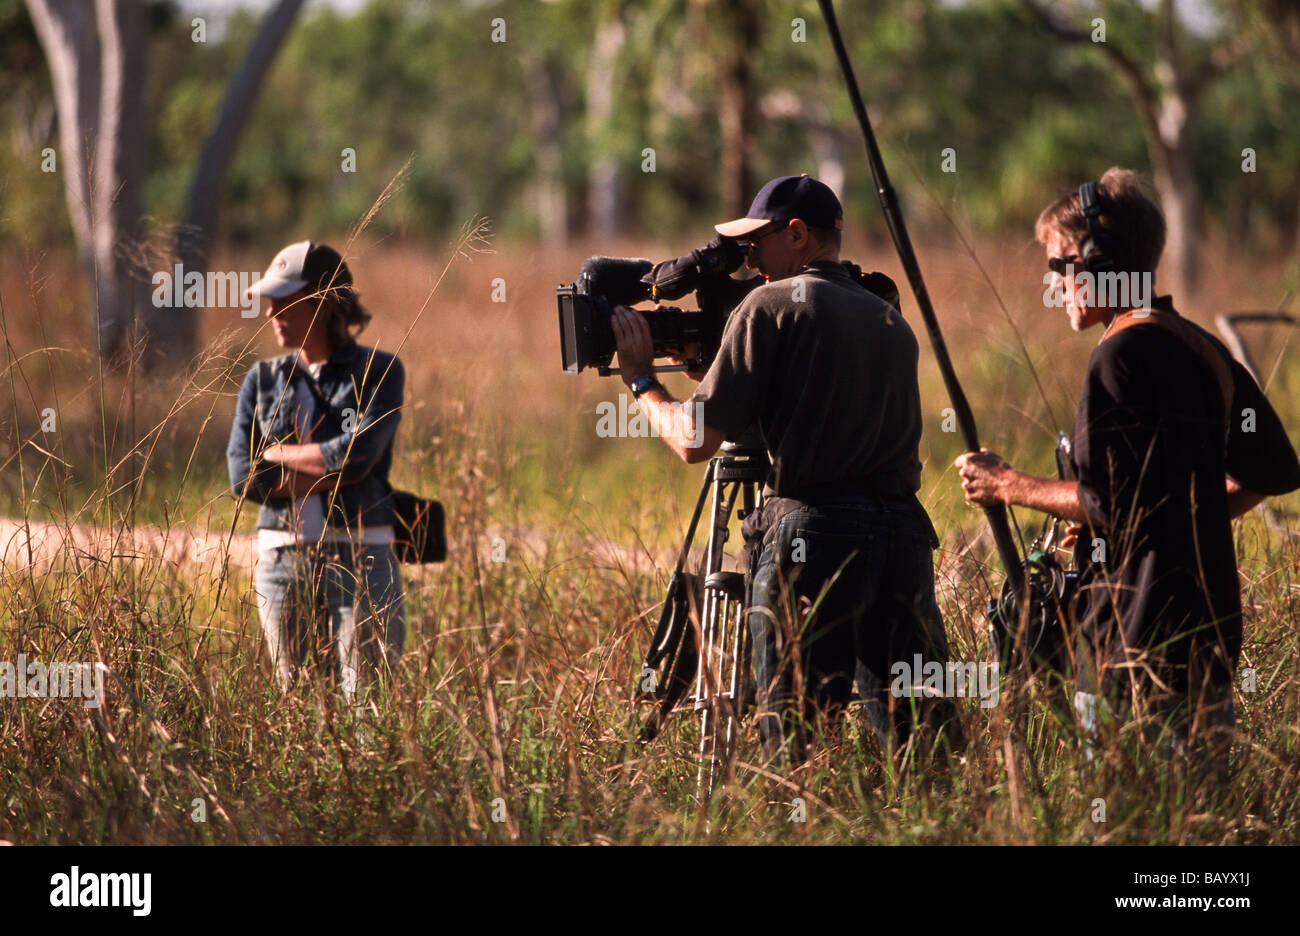 TV crew, Australia Stock Photo